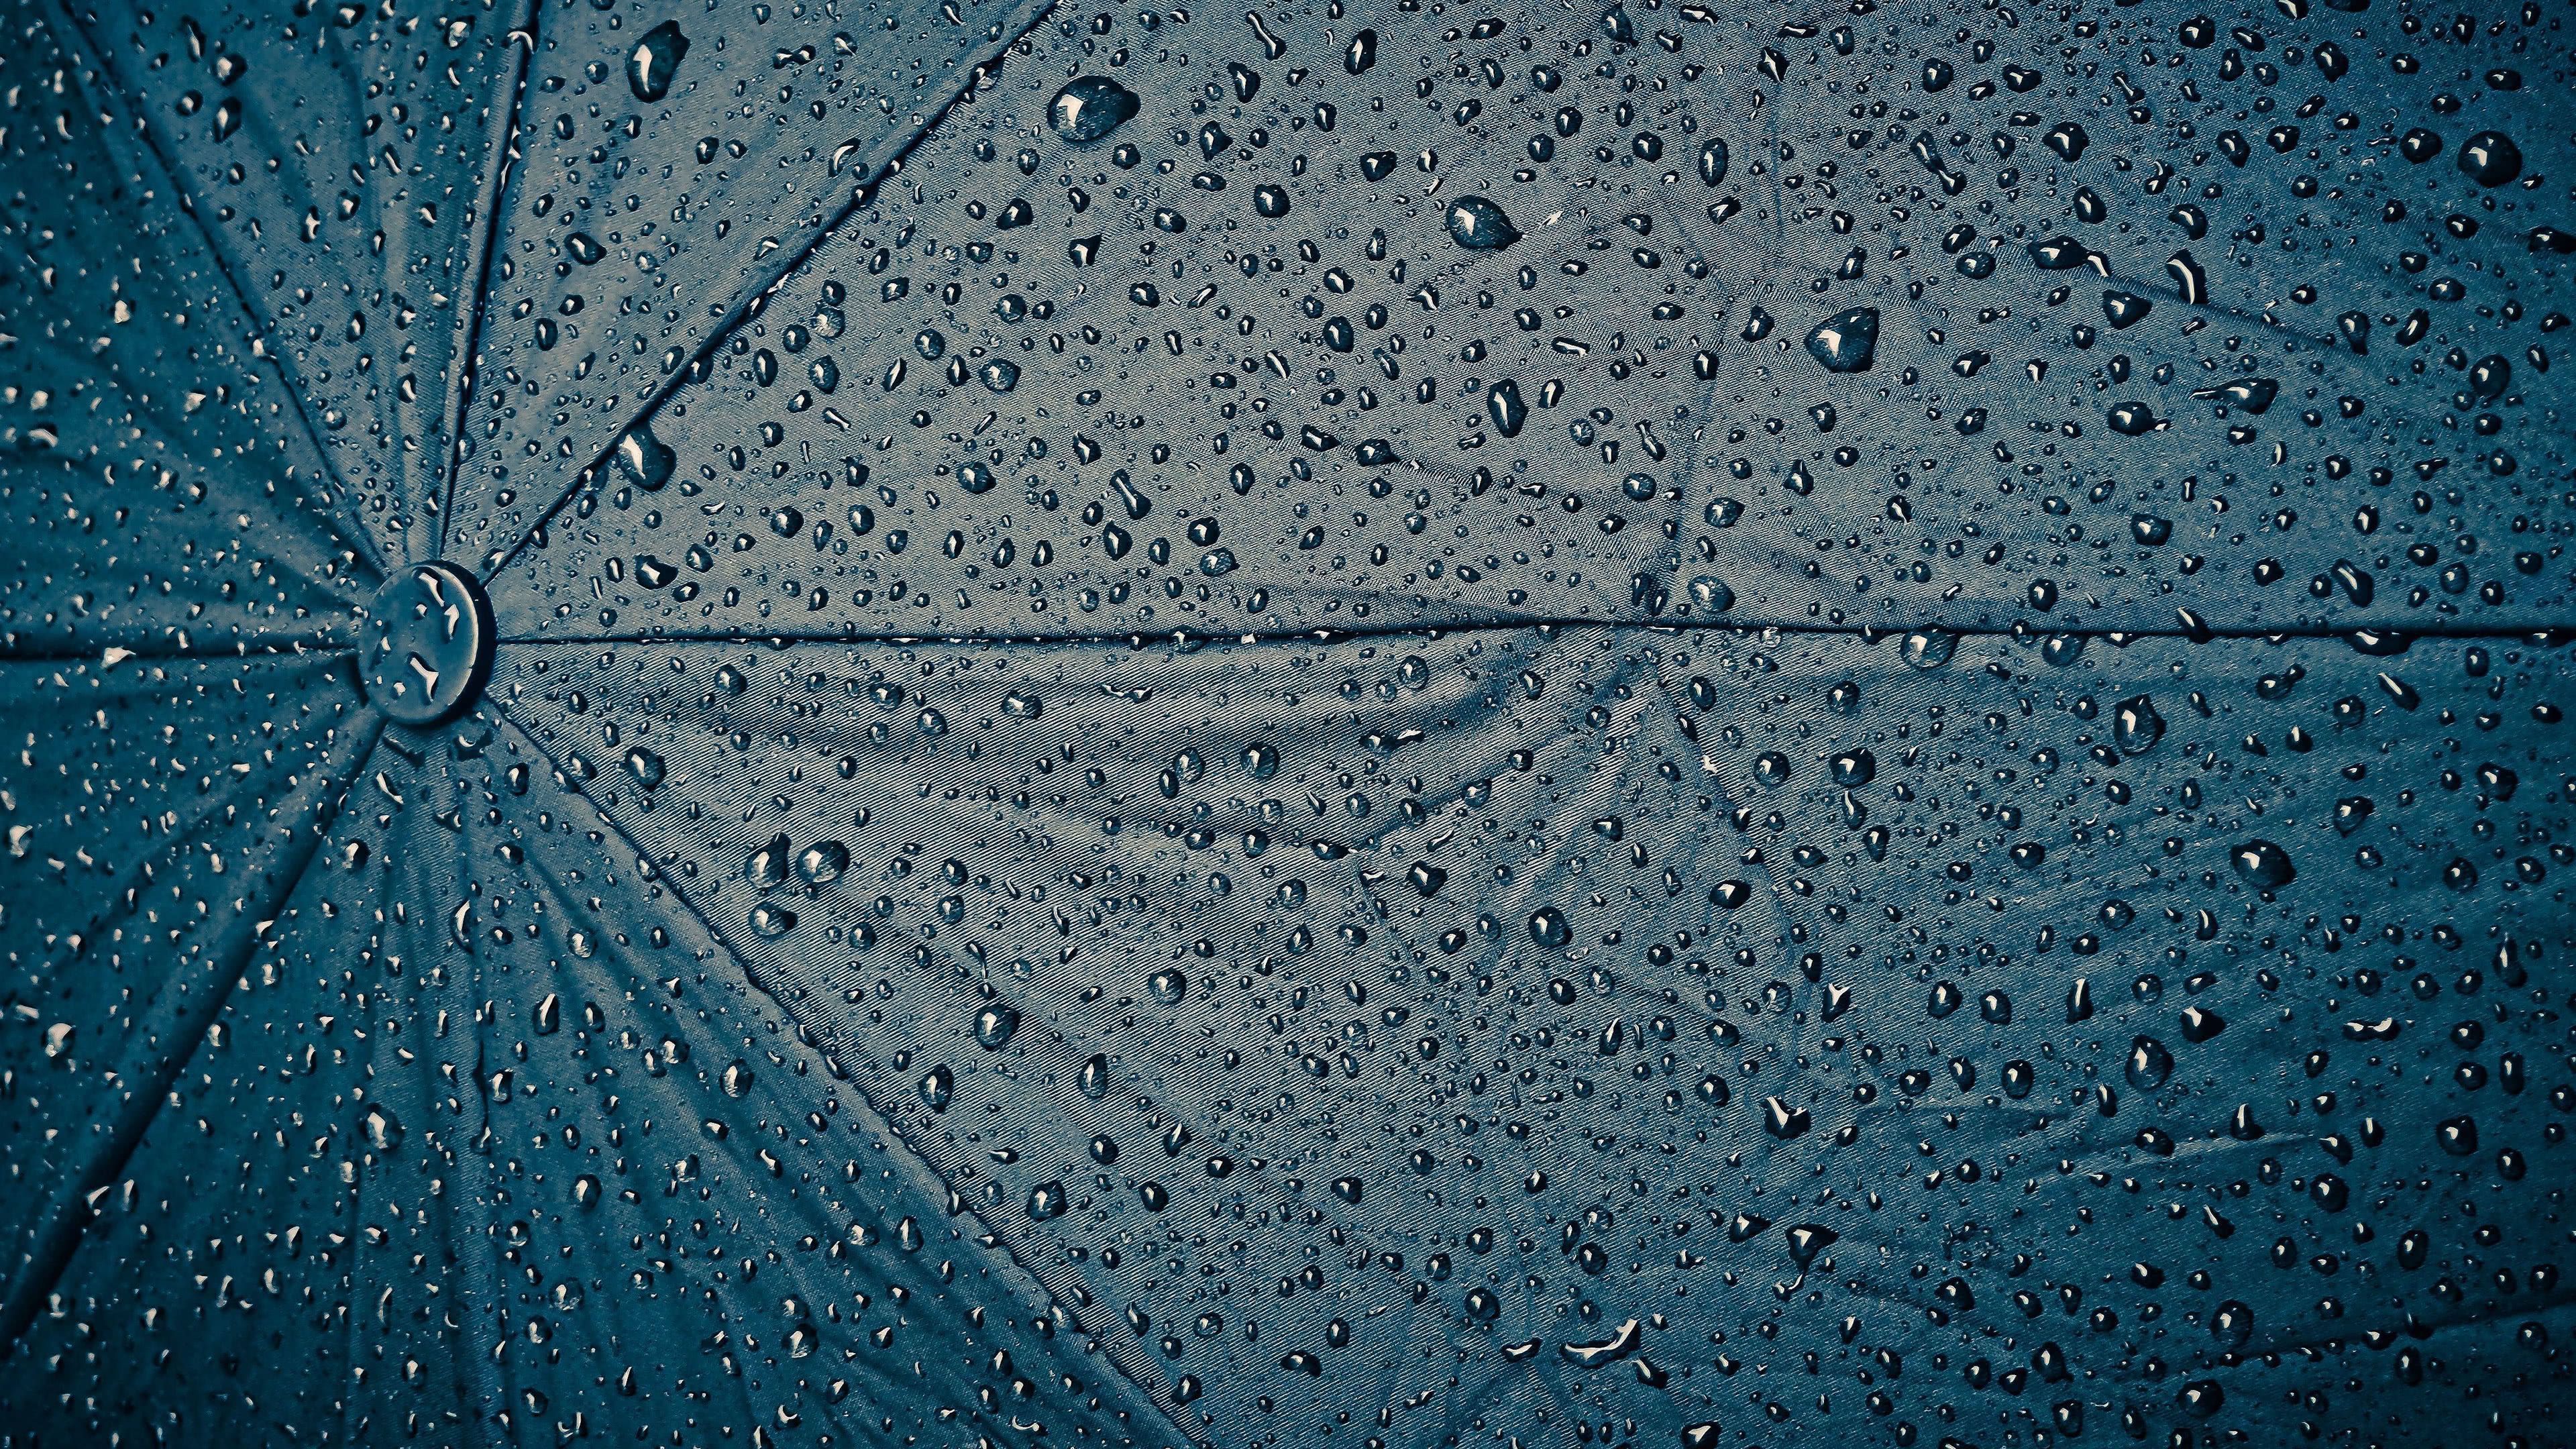 Water Drops On Umbrella UHD 4K Wallpaper